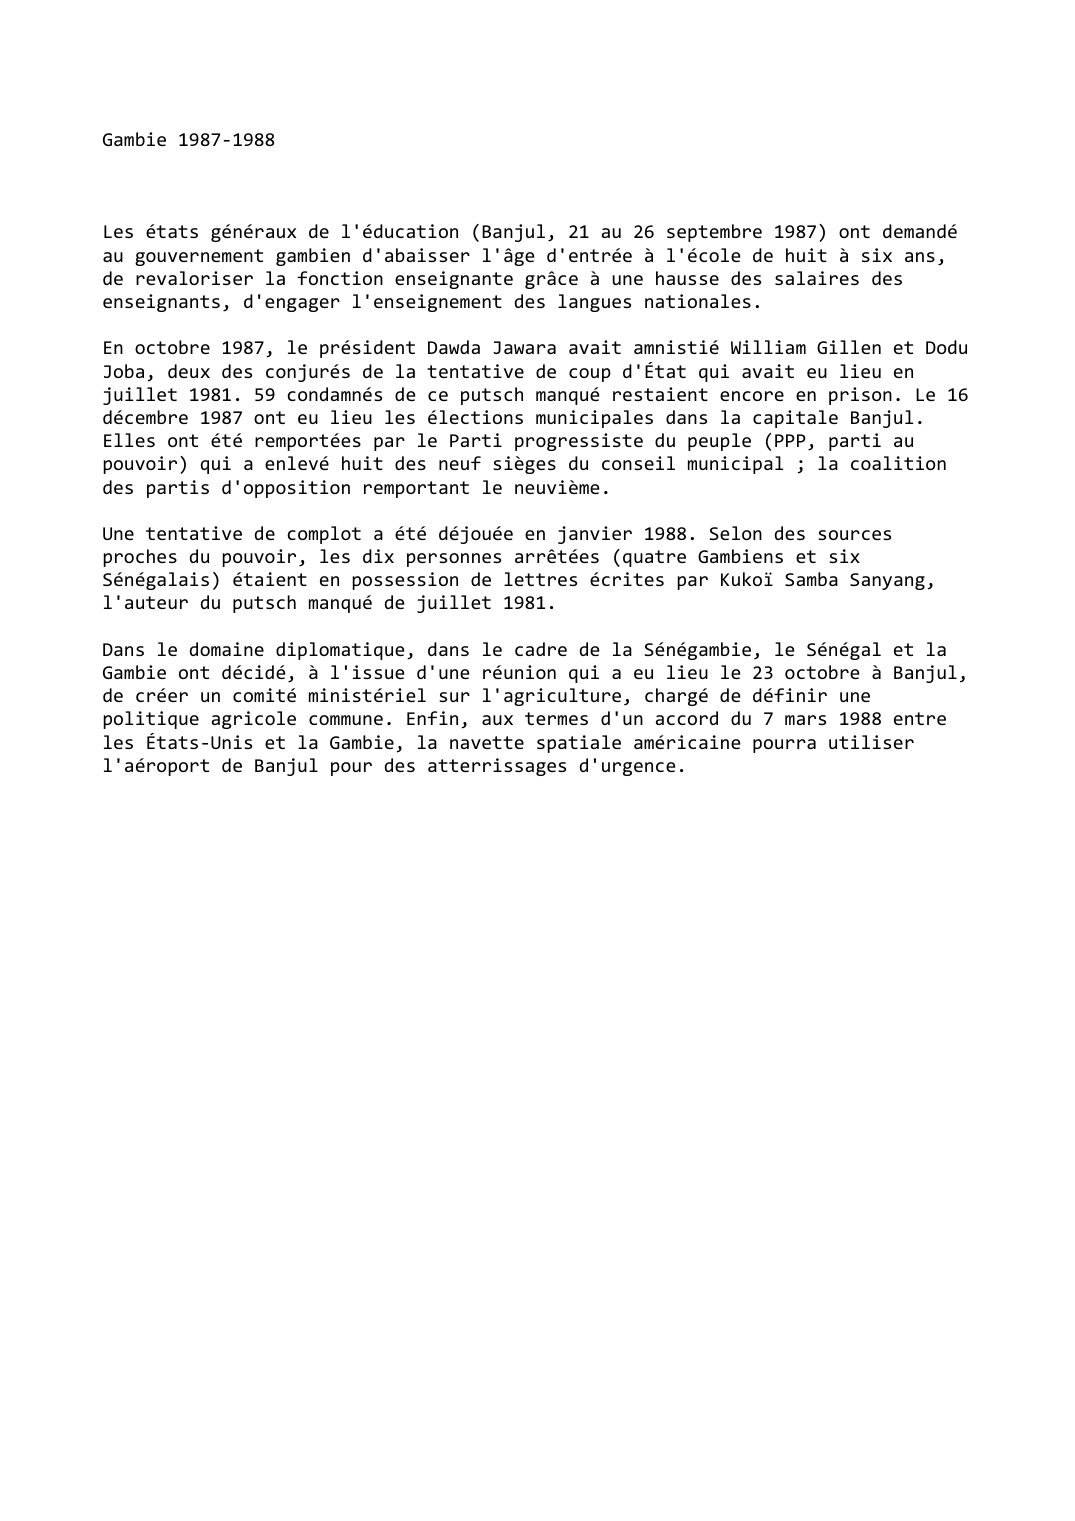 Prévisualisation du document Gambie (1987-1988)